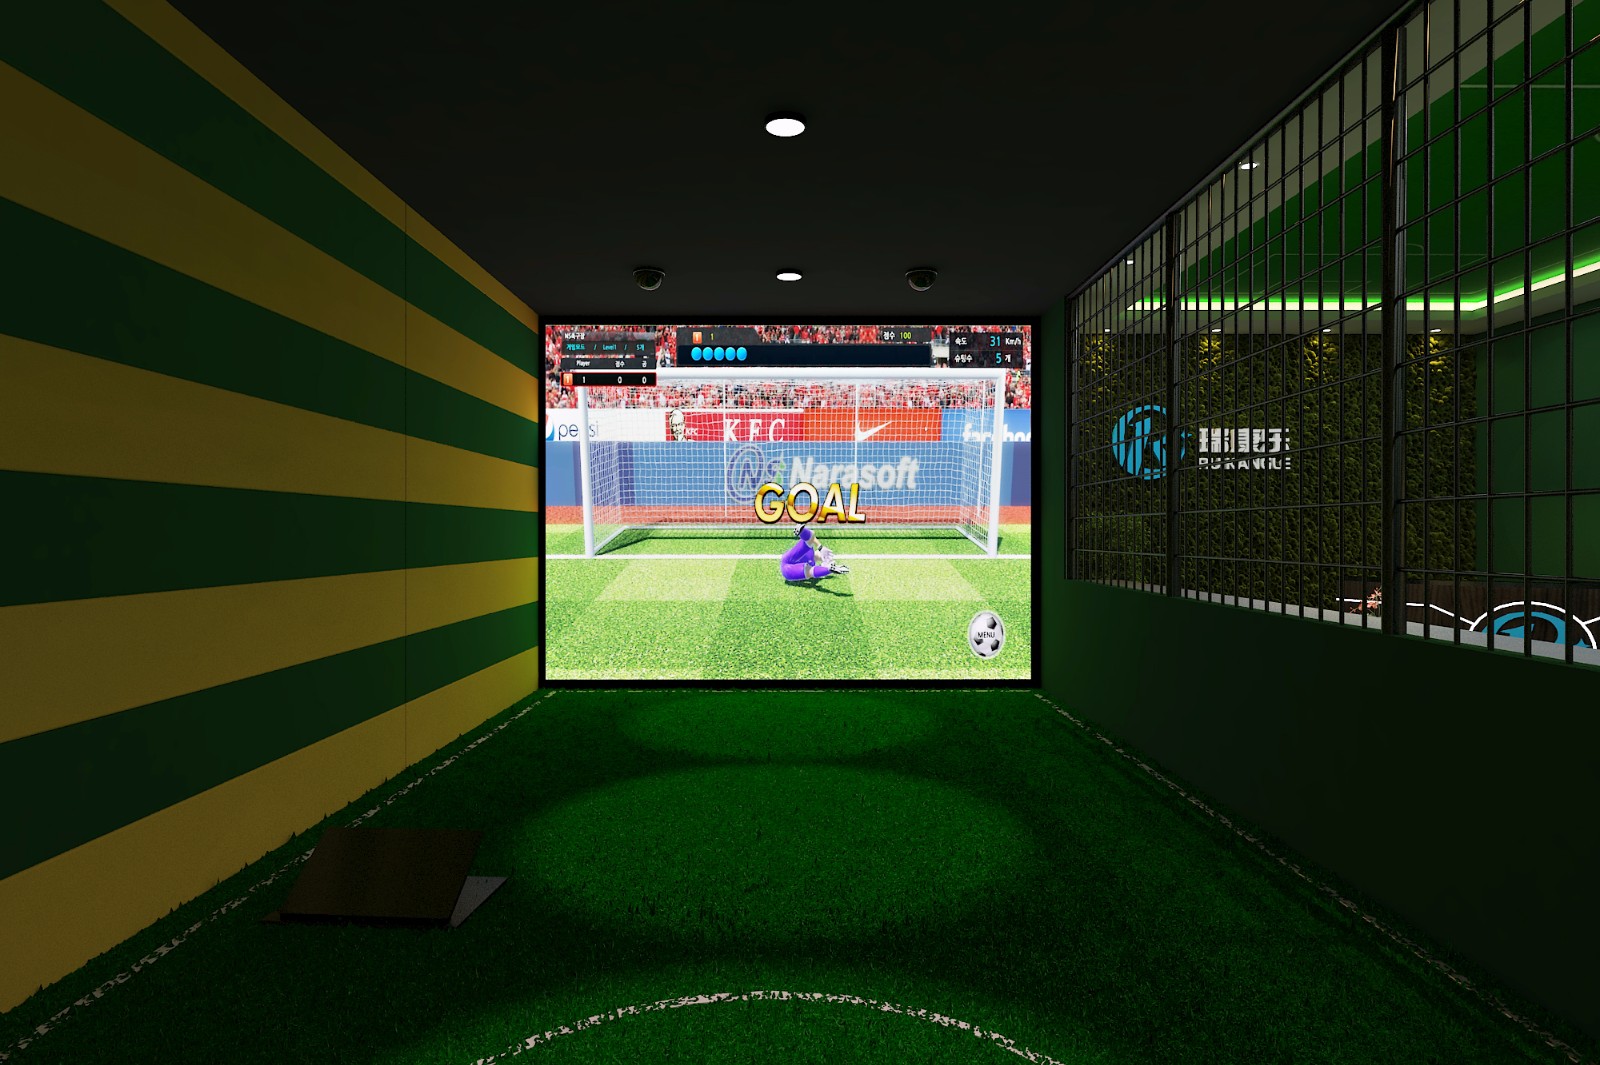 足球工作室模拟器游戏点评玩家可以在这里管理那些知名球员